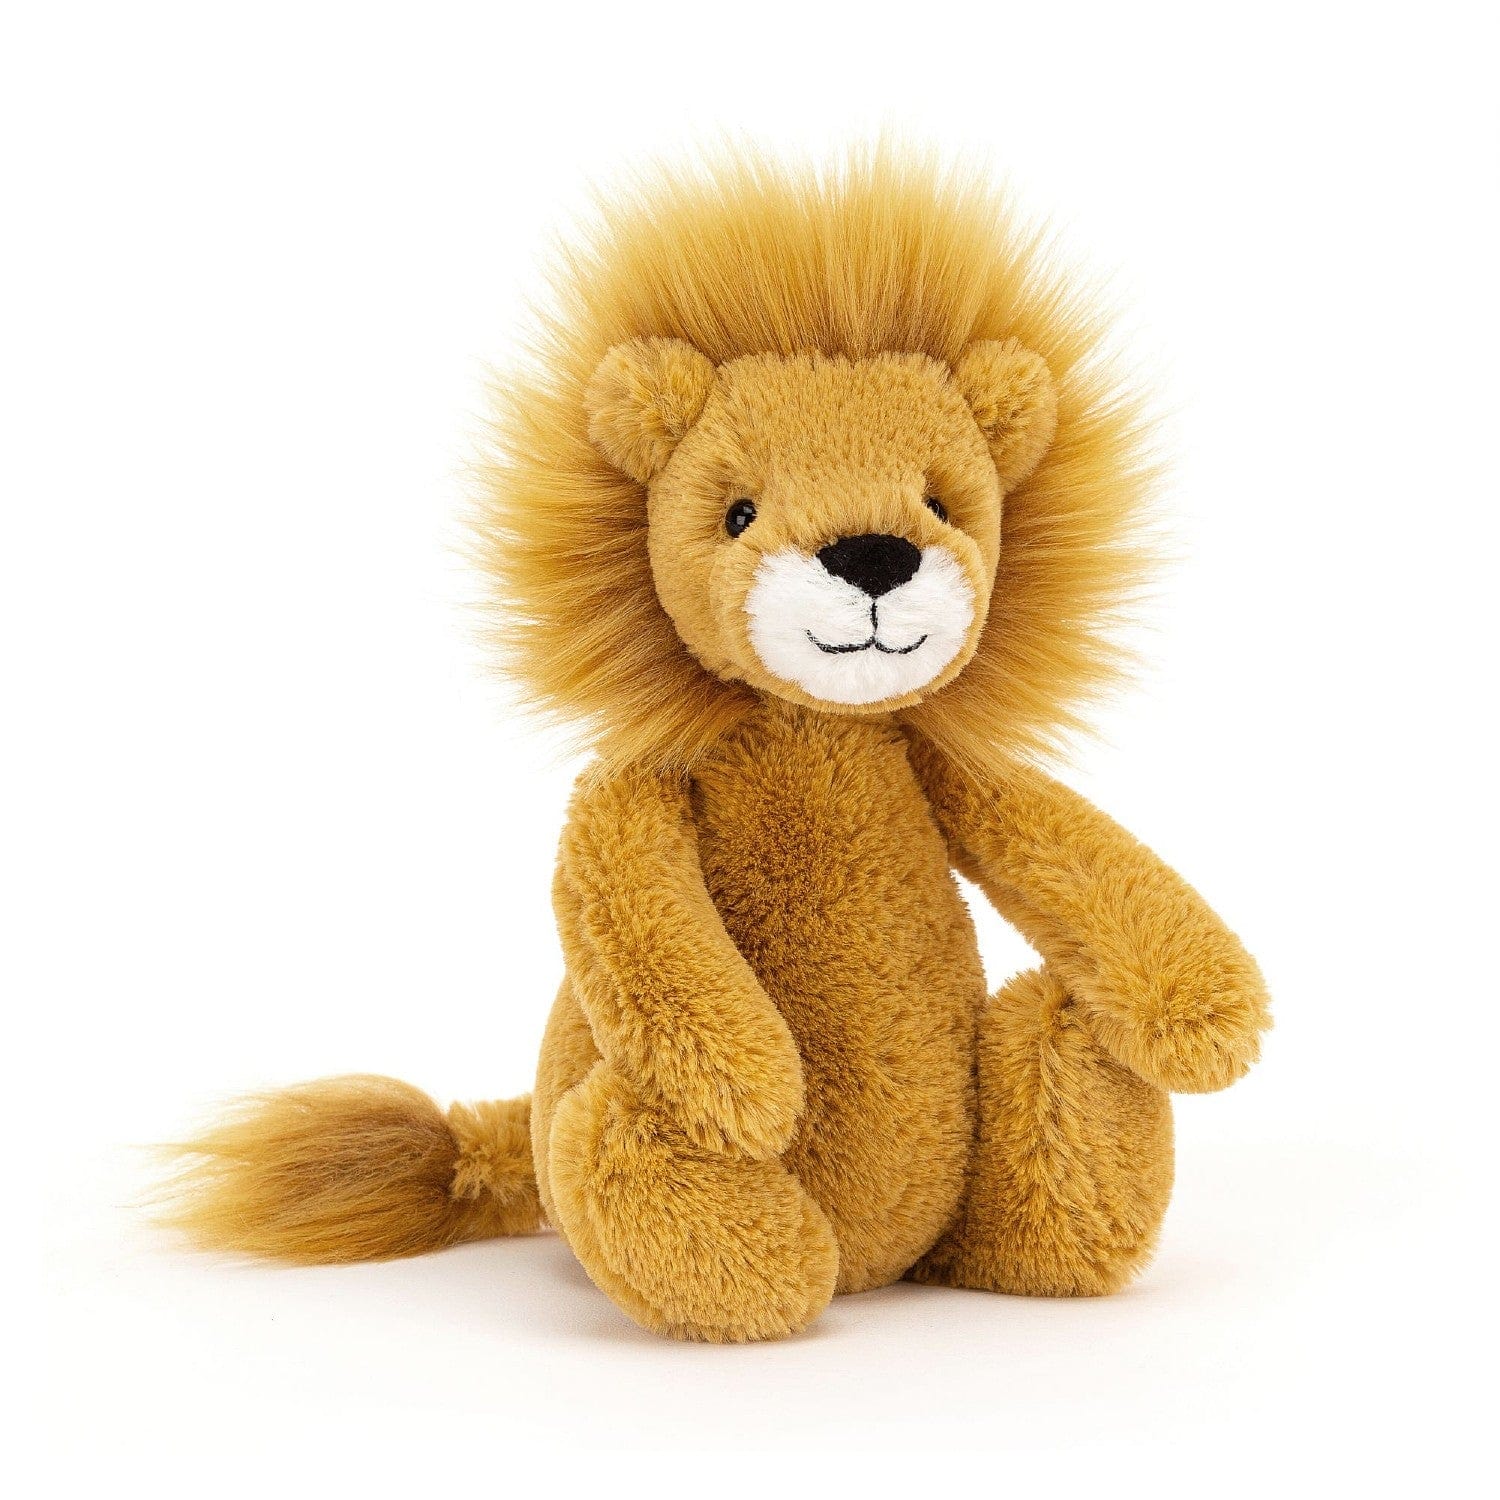 Jellycat Lion Small - 18cm Jellycat Bashful Lion Soft Toy